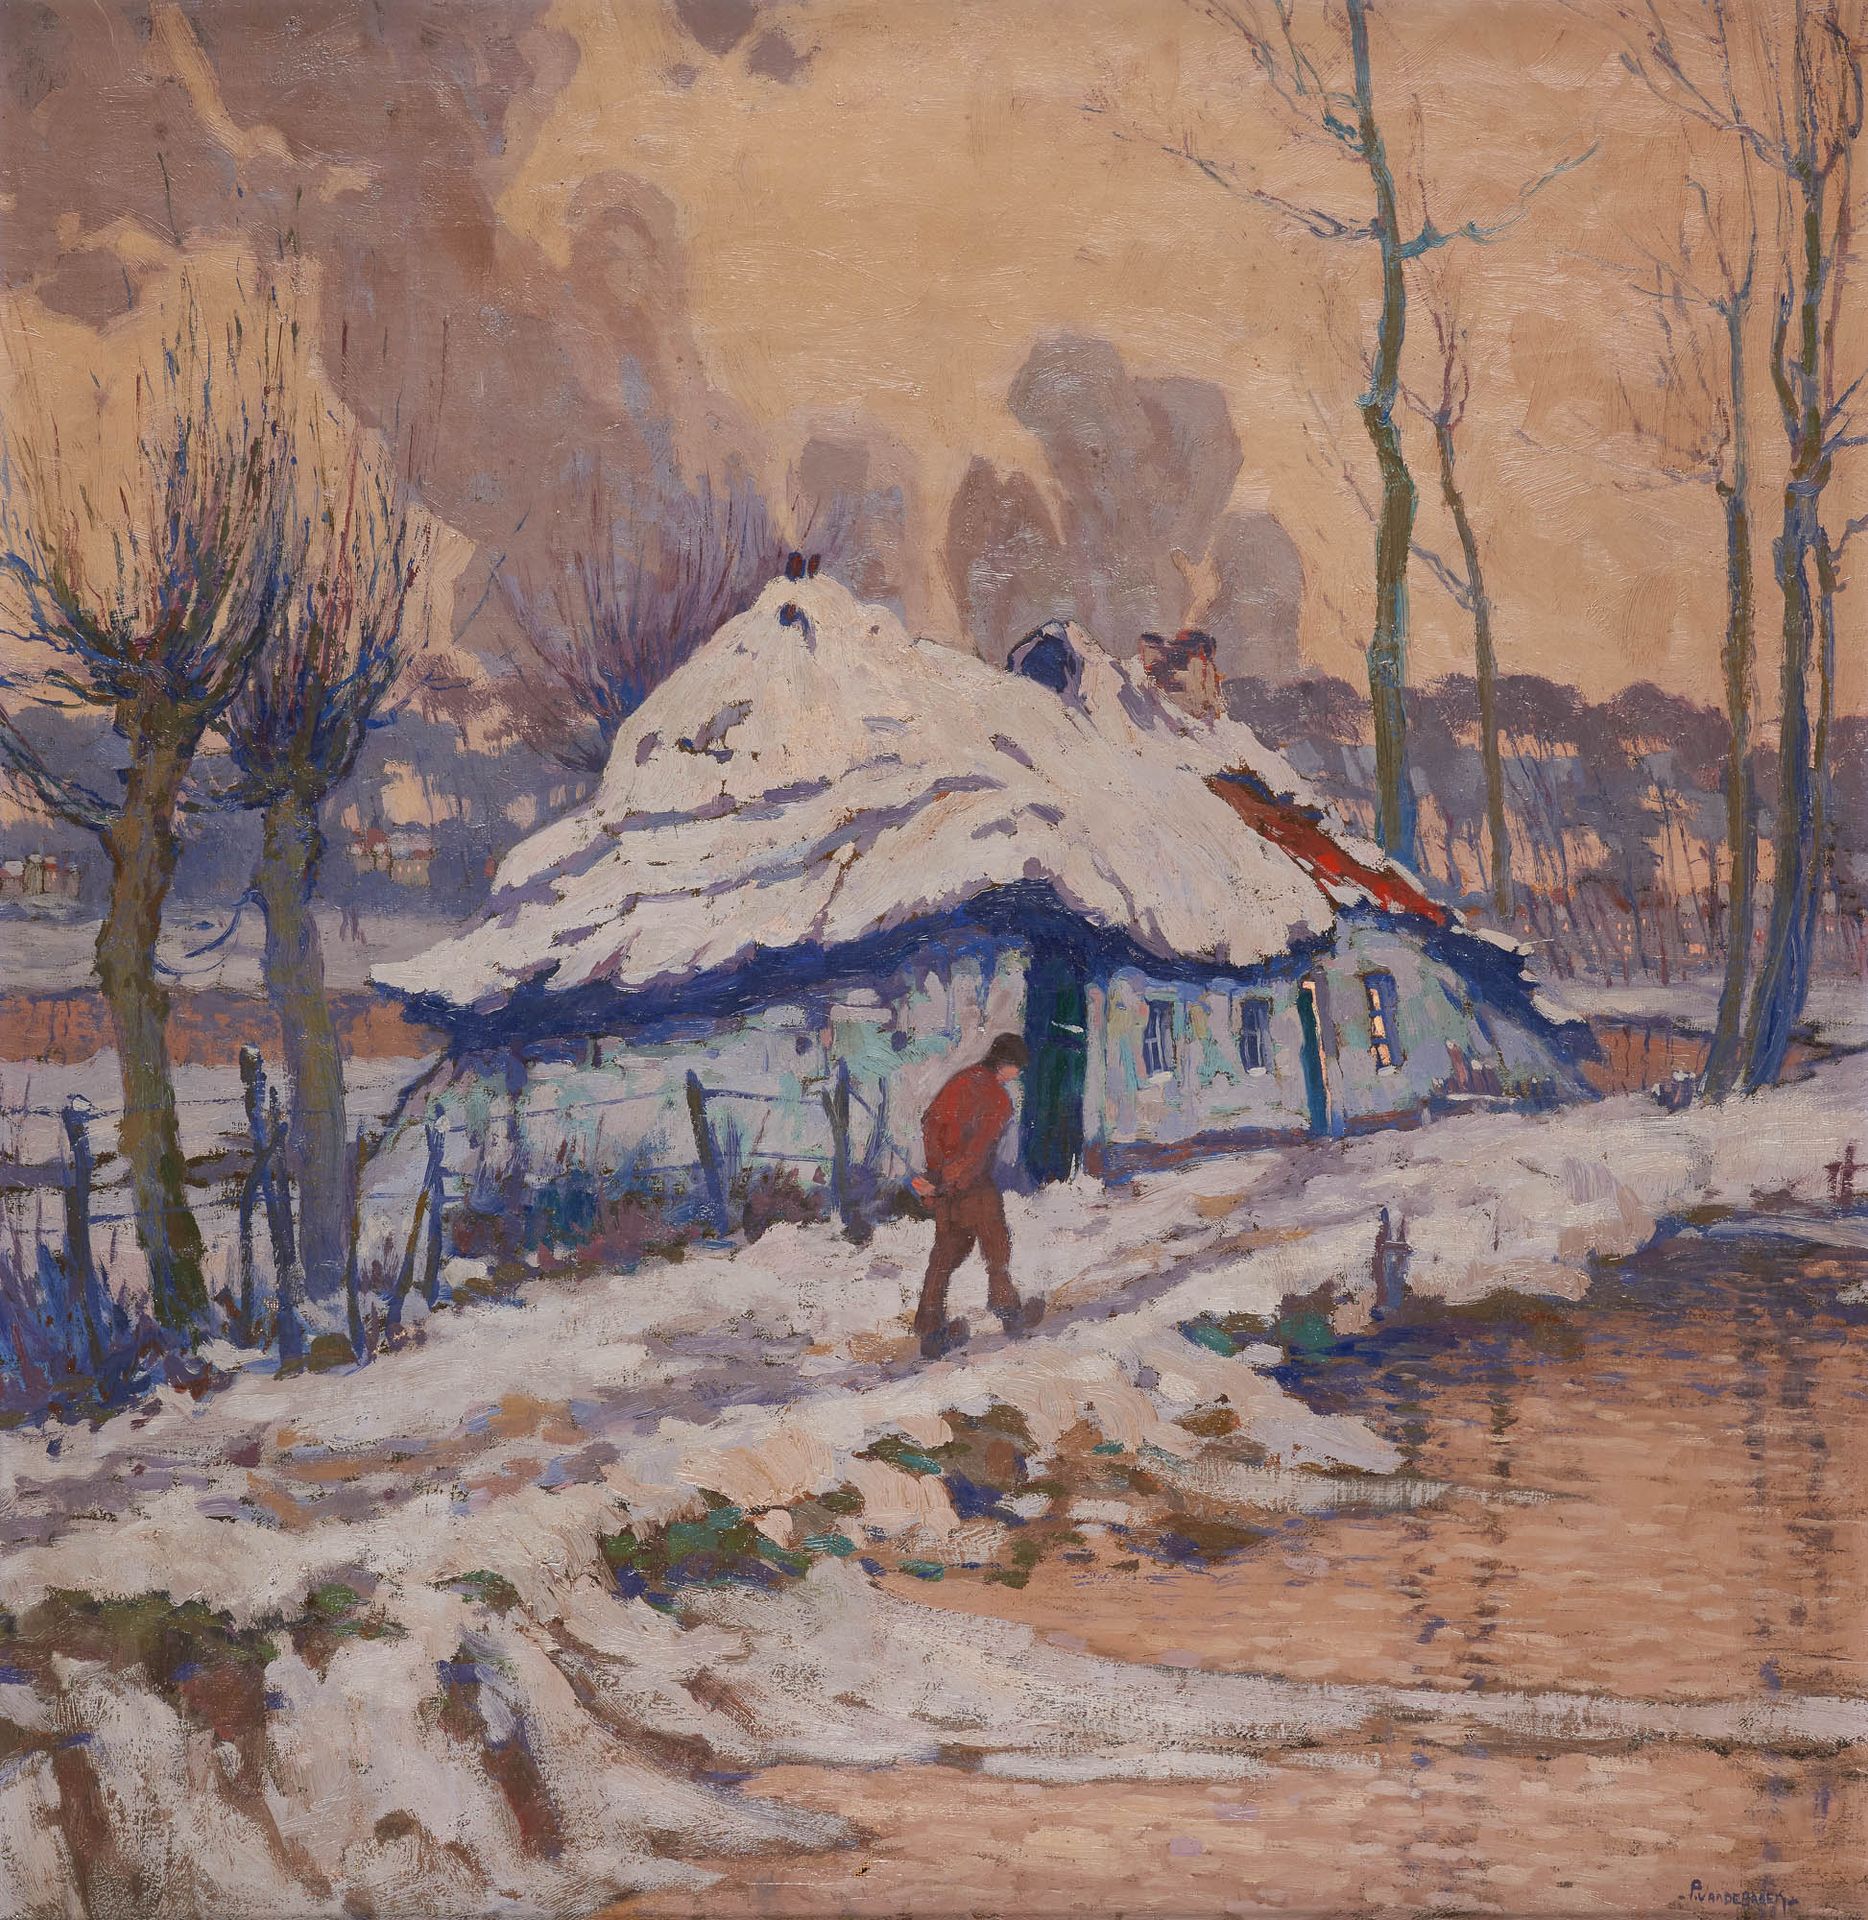 Pol VAN DE BROECK École belge (1887-1927) Huile sur toile: "Effet de neige".

Si&hellip;